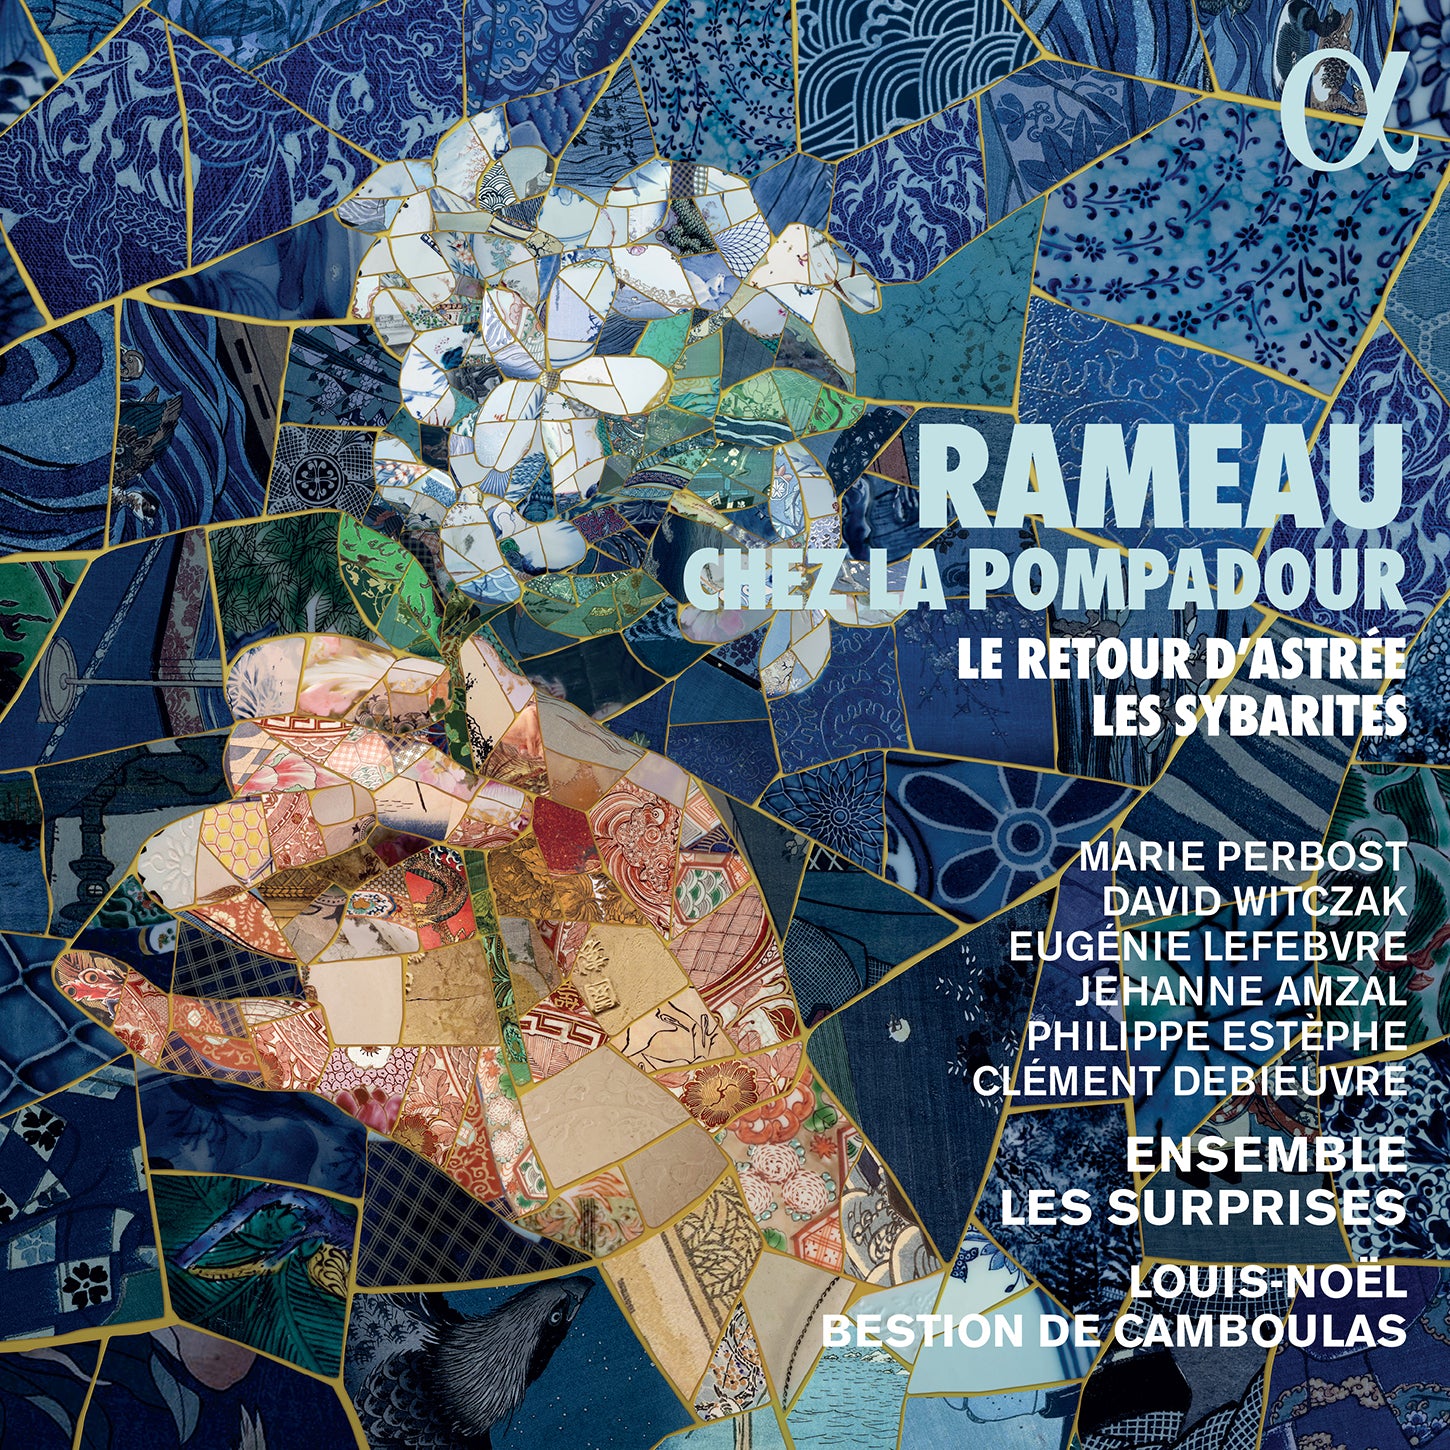 Rameau chez la Pompadour / Camboulas, Ensemble Les Suprises